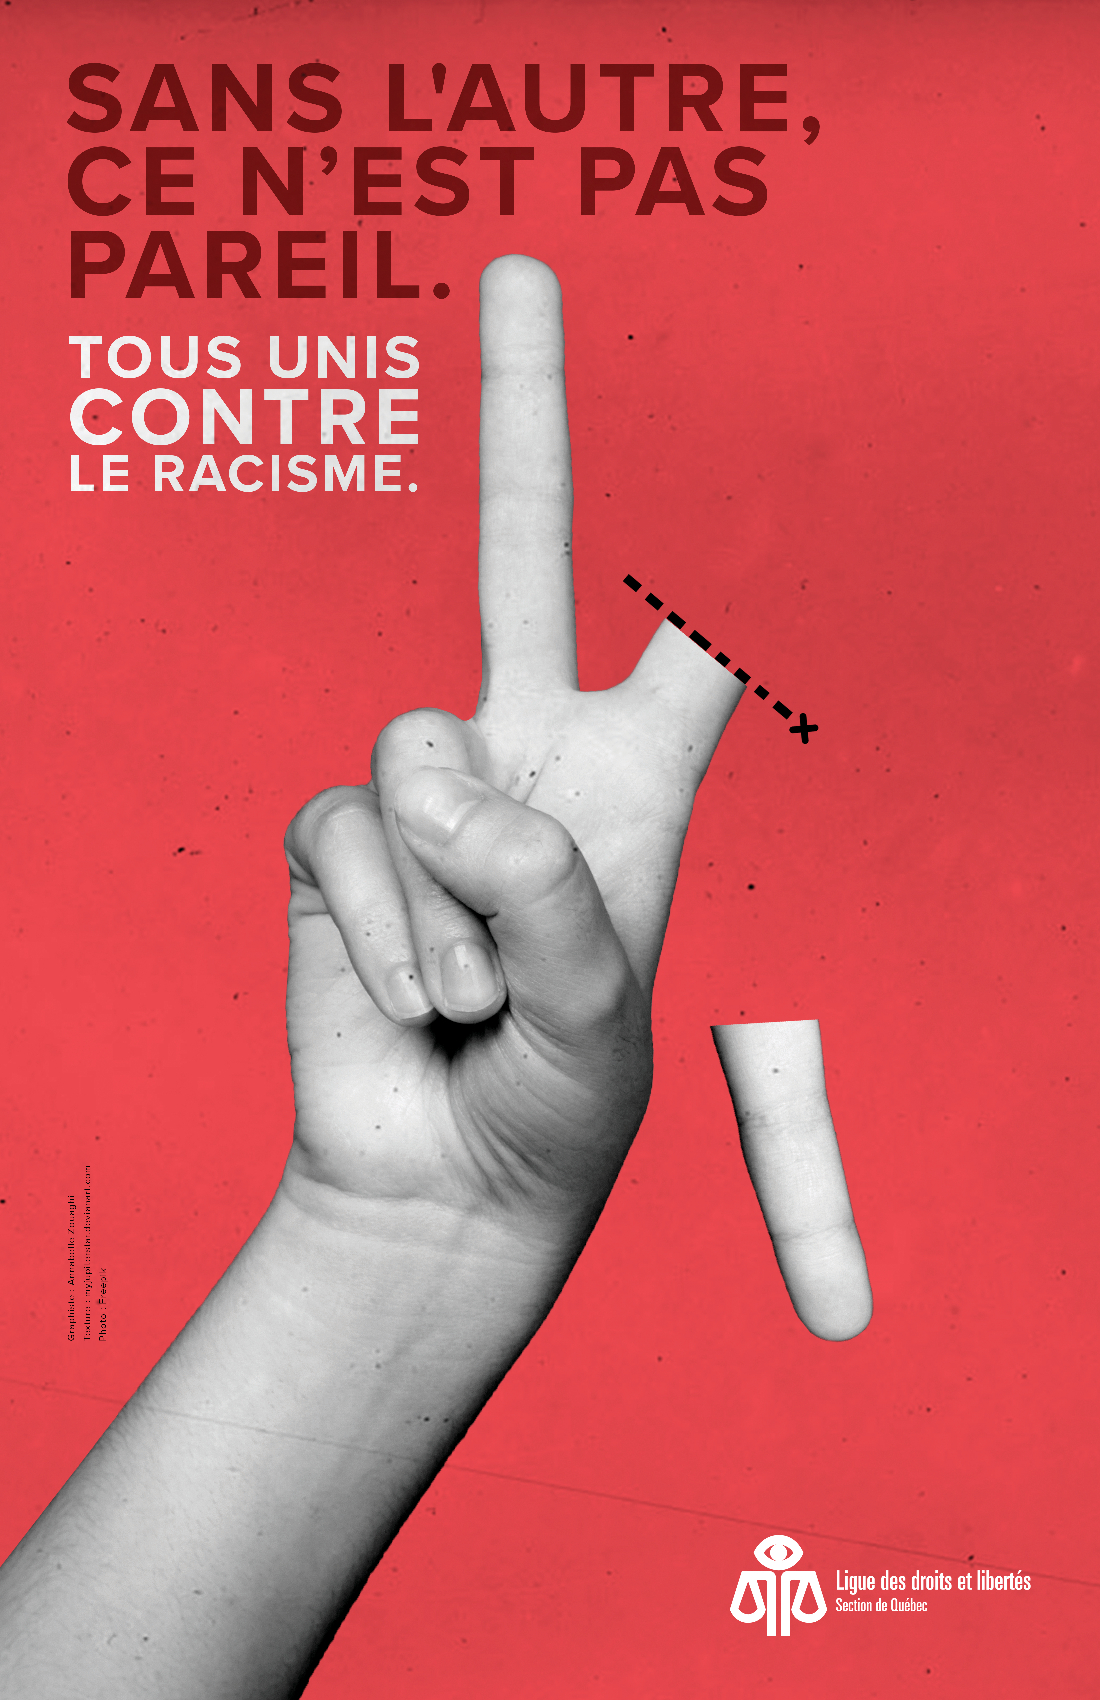 On S Affiche Contre Le Racisme Ligue Des Droits Et Libertés